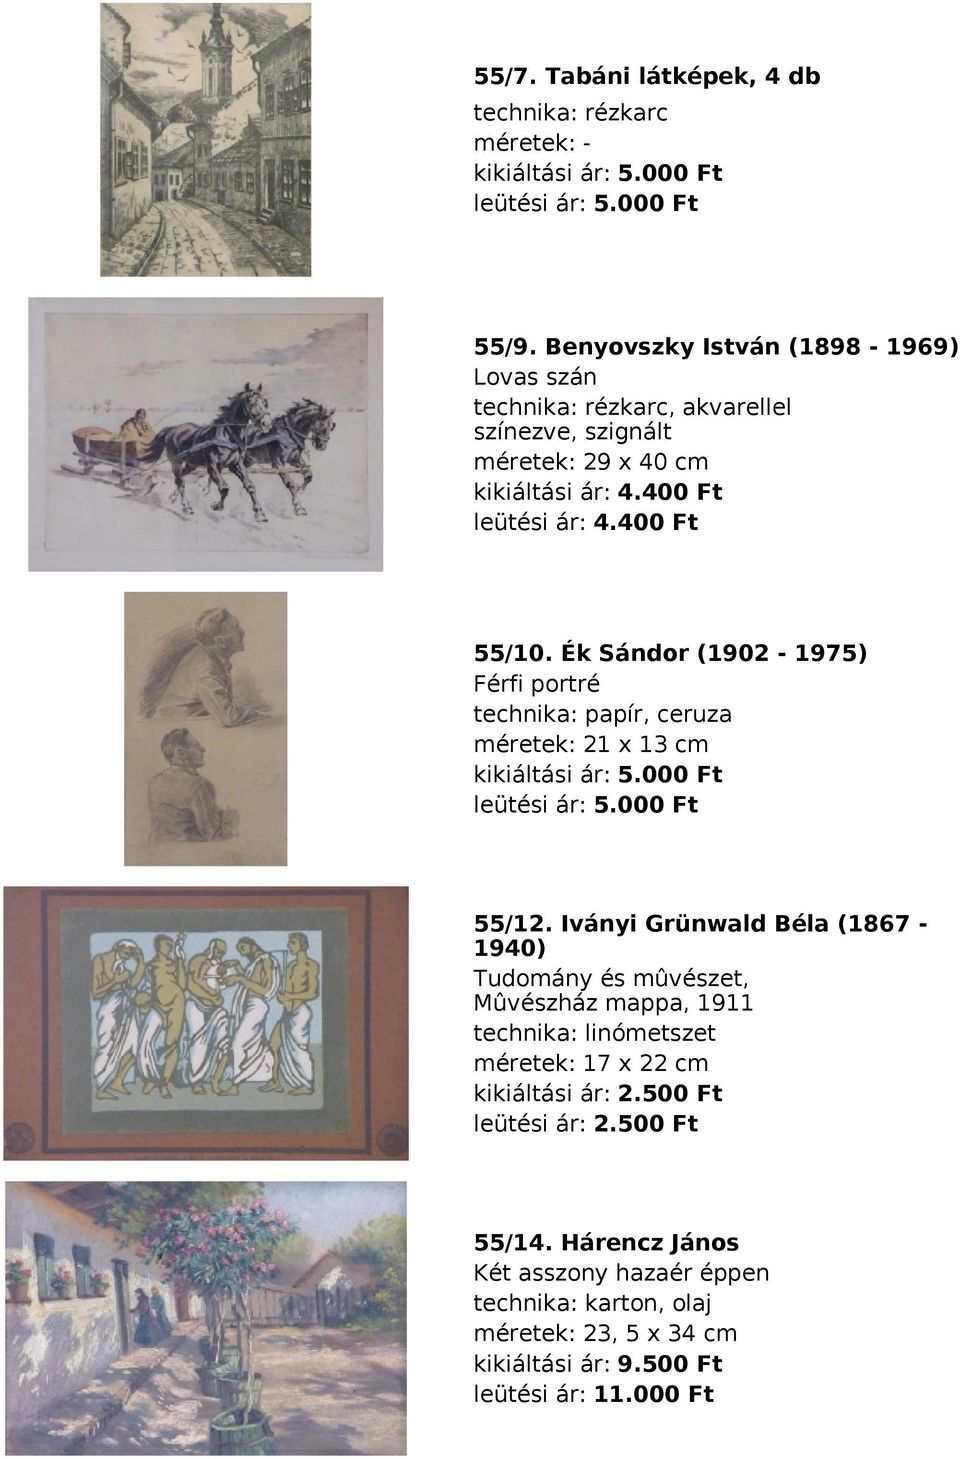 Ék Sándor (1902-1975) Férfi portré technika: papír, ceruza méretek: 21 x 13 cm kikiáltási ár: 5.000 Ft leütési ár: 5.000 Ft 55/12.